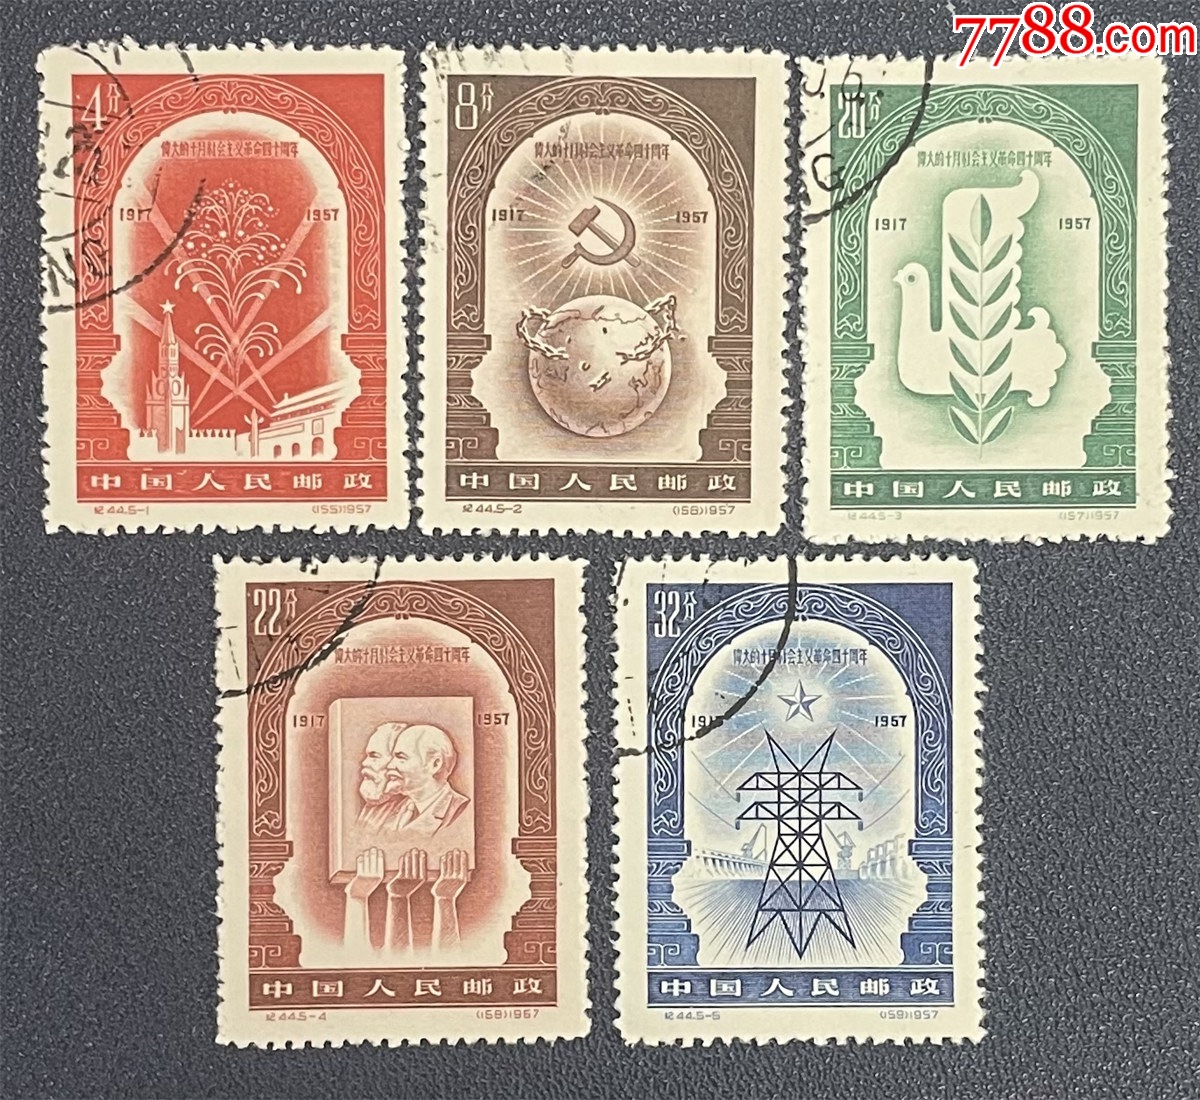 纪44邮票十月革命40周年老纪特盖销邮票顺戳保真_“T”字邮票_宏海邮票社 